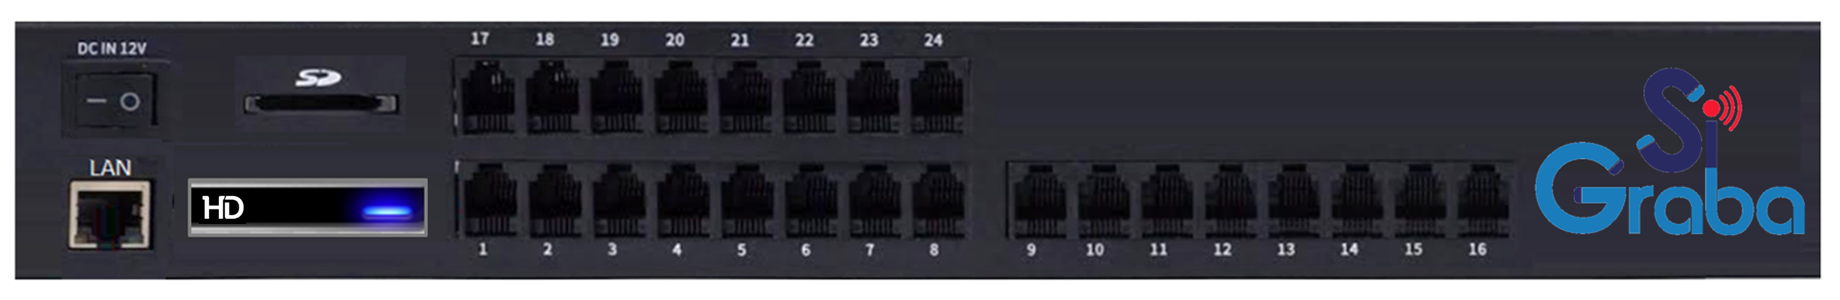 SiGraba con Micro Disco Duro SATA para almacenamiento de grabaciones además de ranura para Memoría MicroSD con puerto de Red Ethernet, Salida SMDR y administración por explorador Web de 24 Puertos